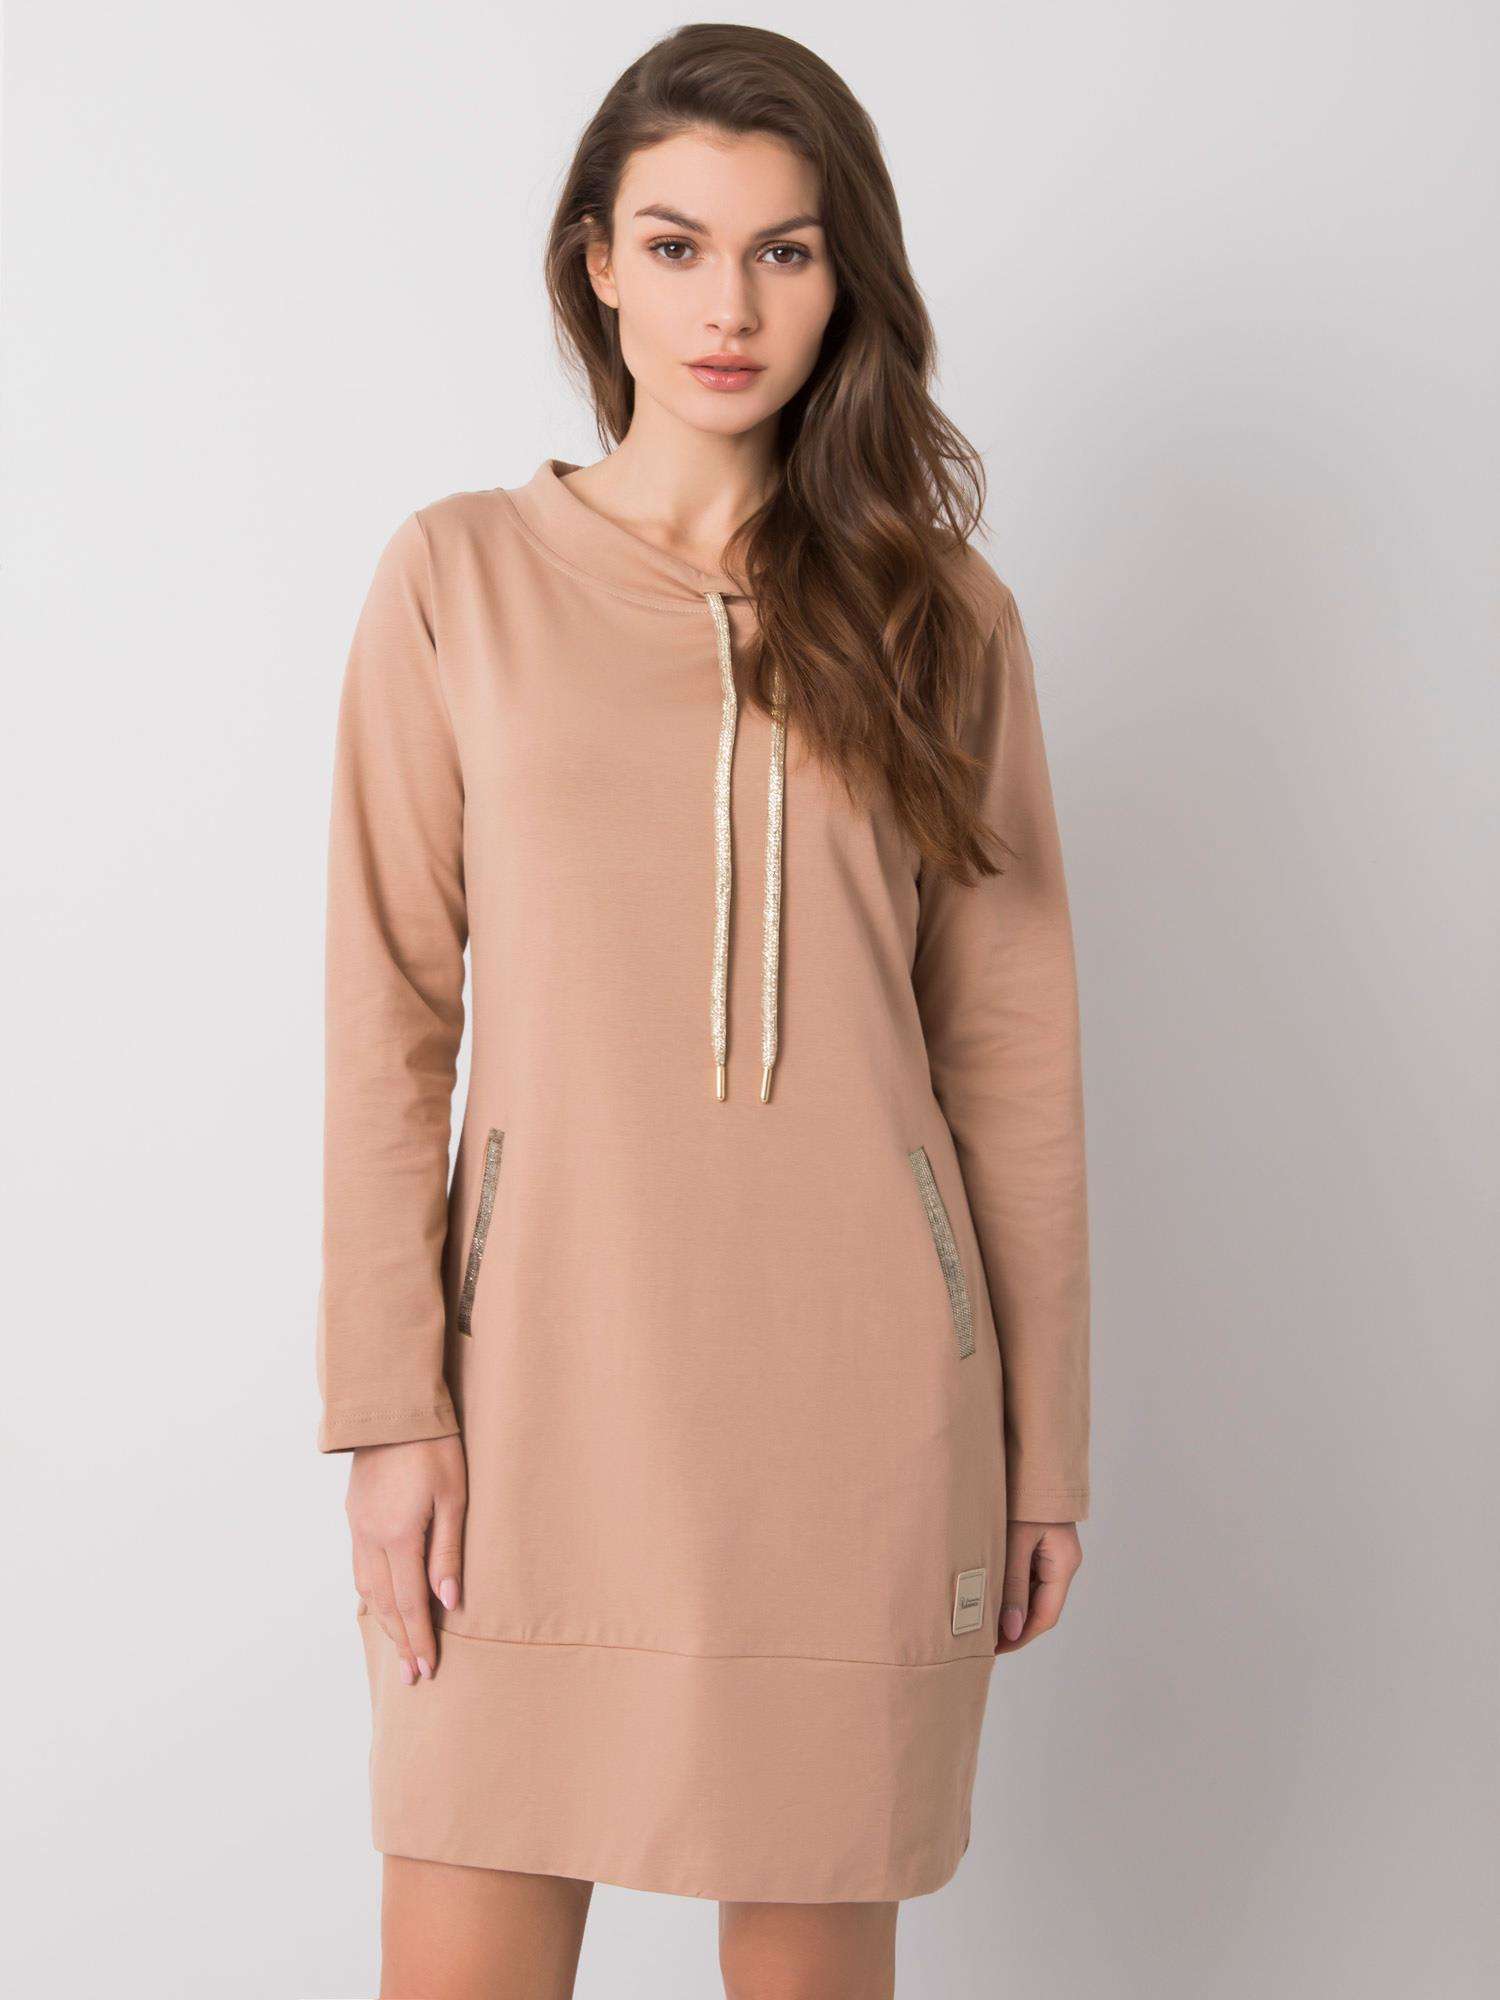 Světle hnědé mikinové šaty s kapsami RV-SK-6067.15X-camel Velikost: S/M